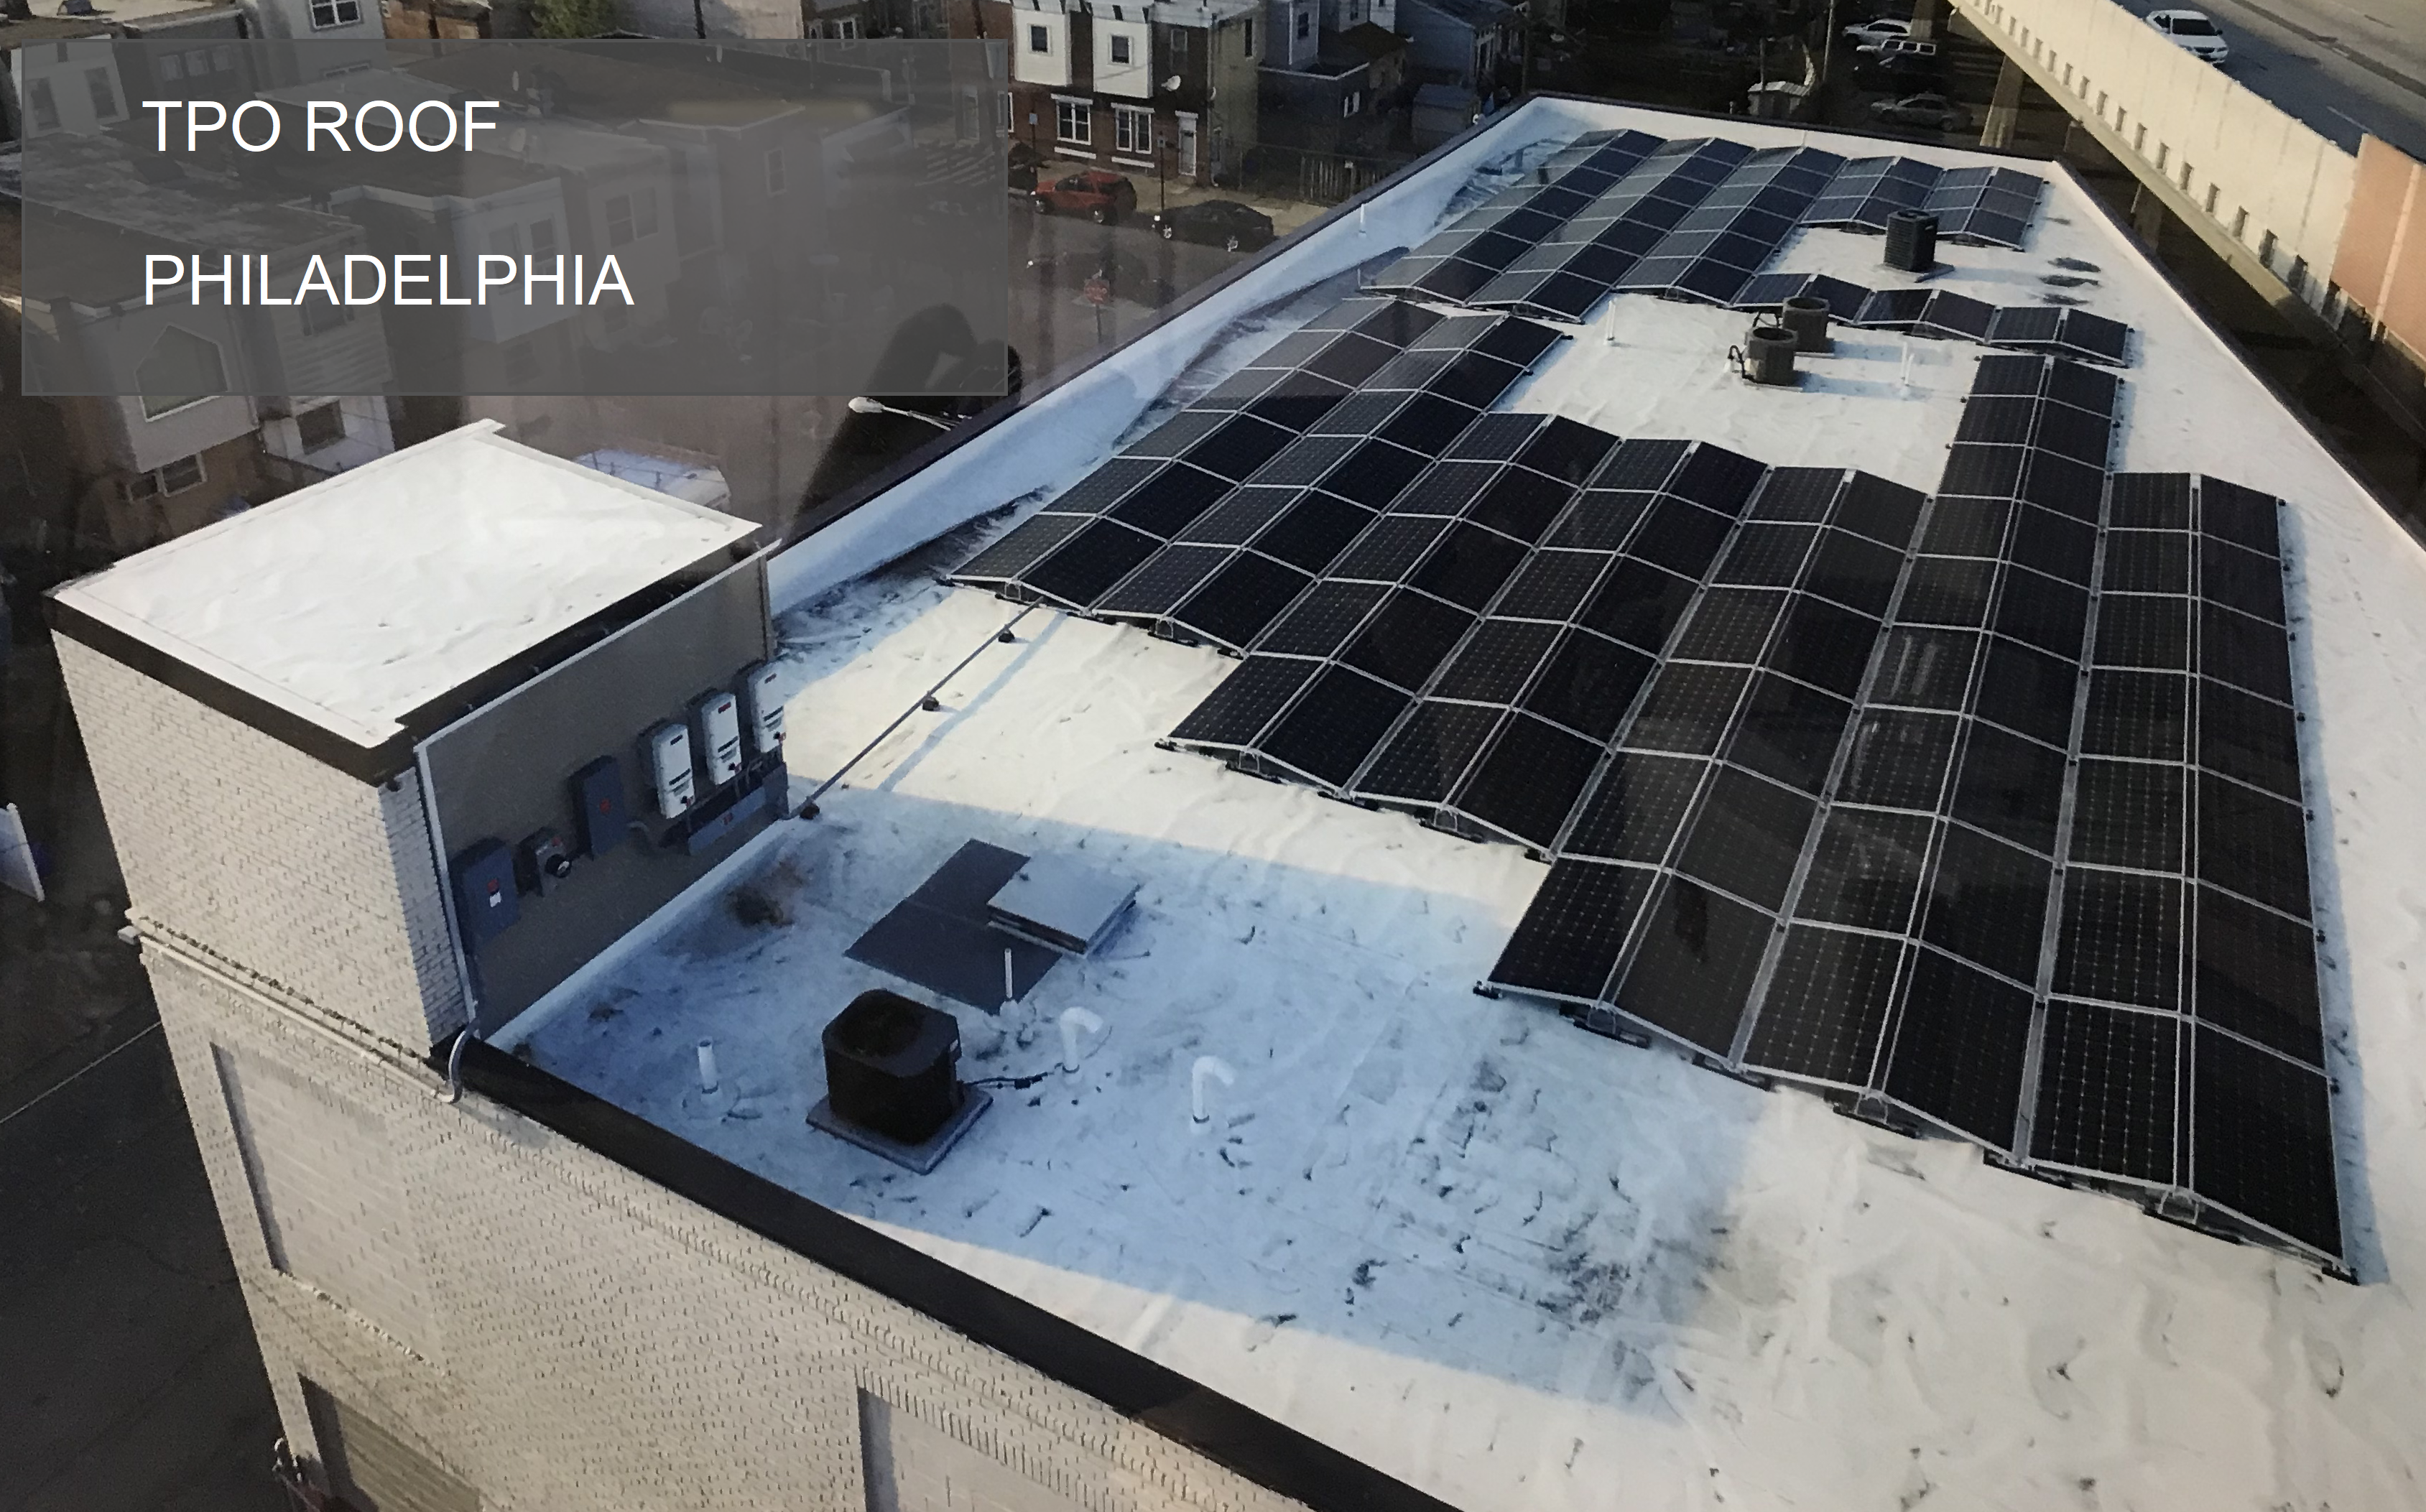 Image of a TPO Roof Philadelphia